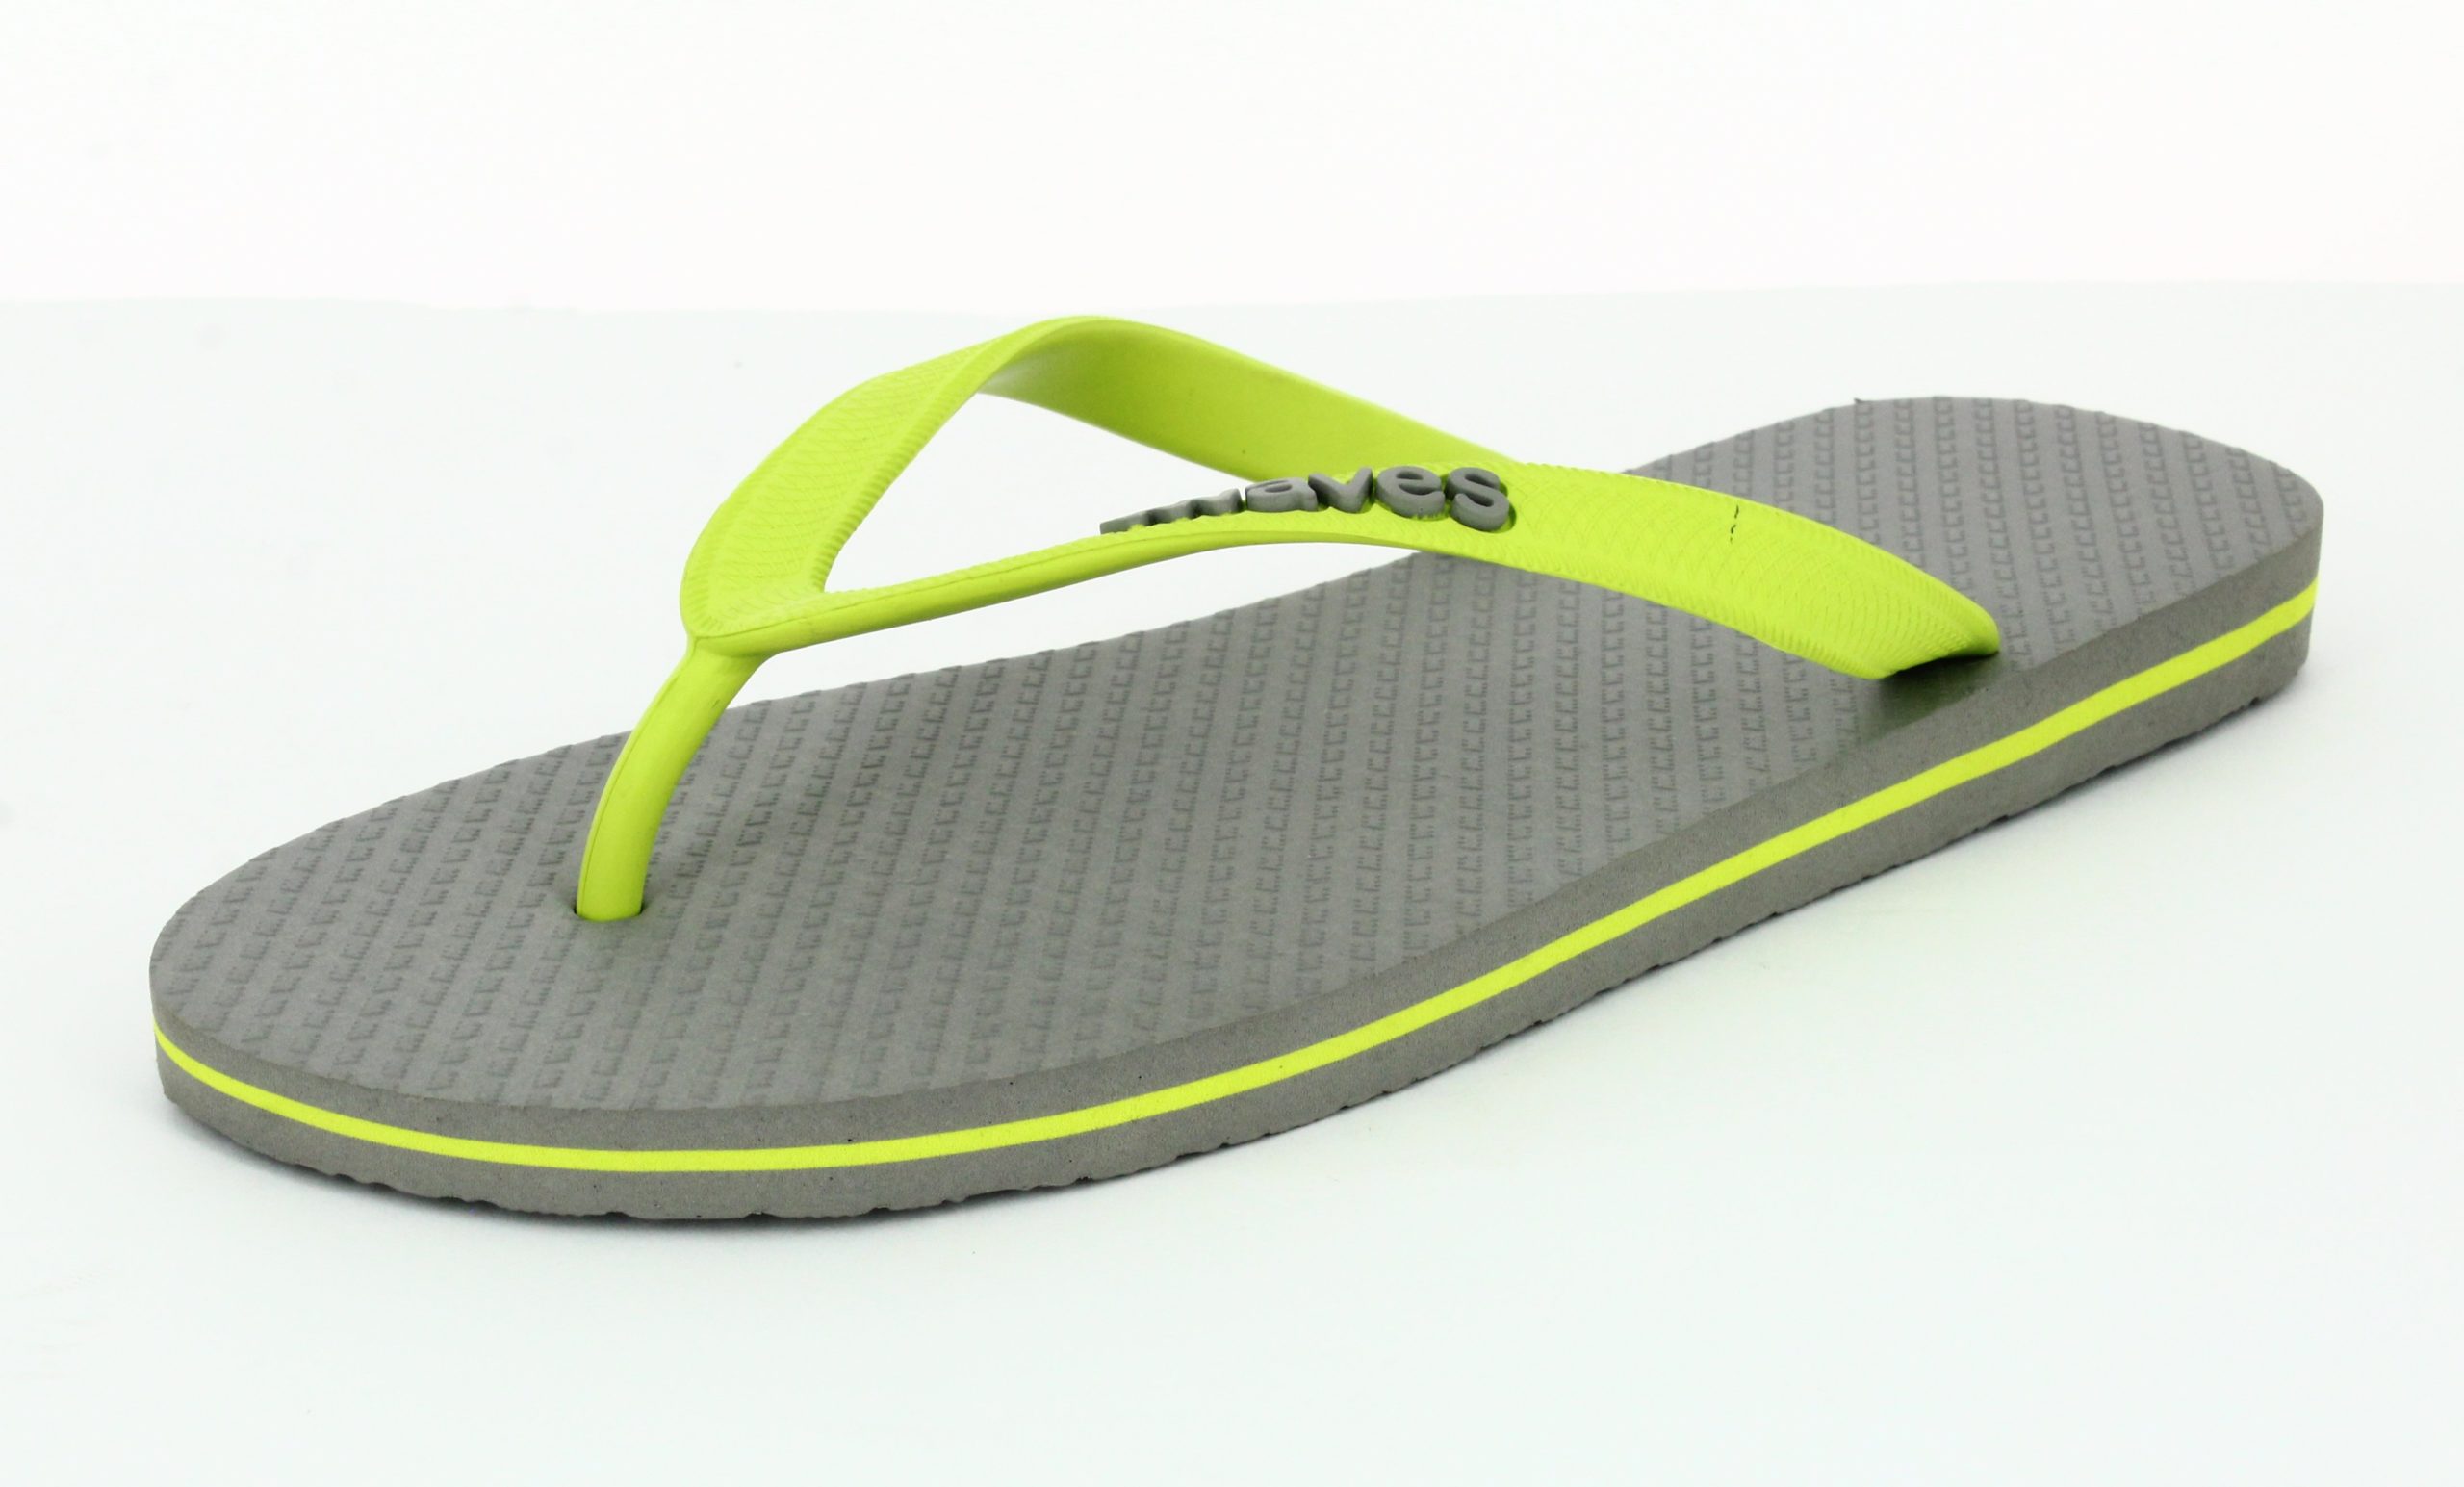 rubber material for flip flops